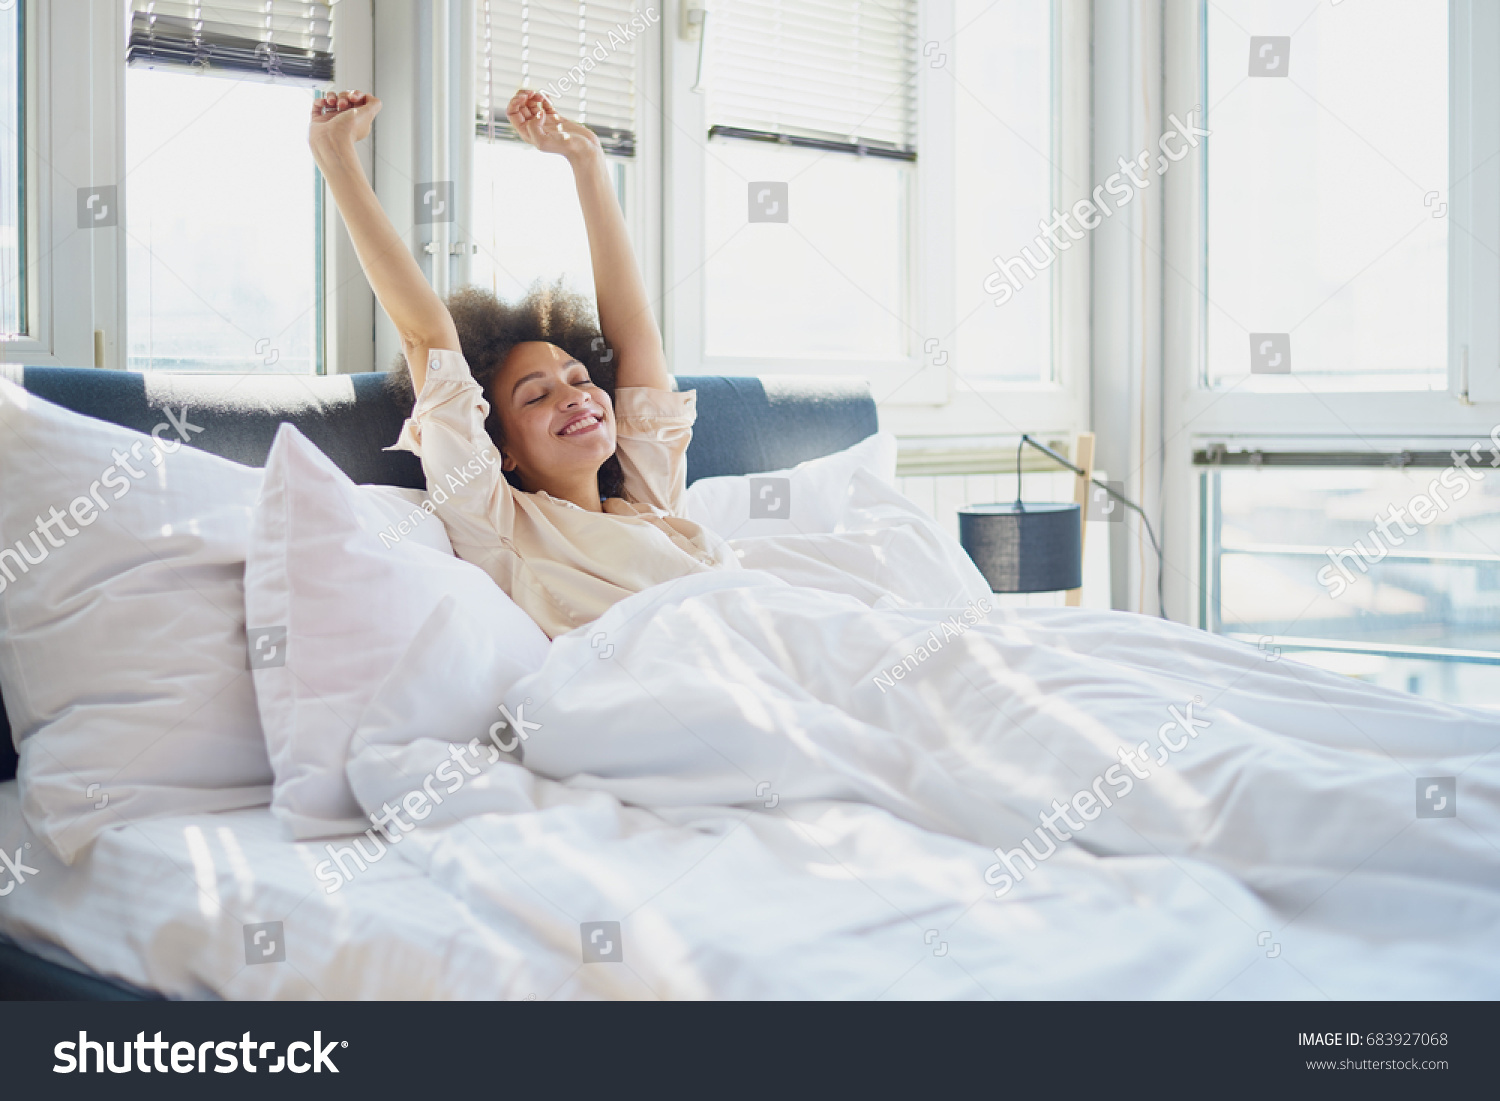 腕を上げてベッドに寝た女性 の写真素材 今すぐ編集